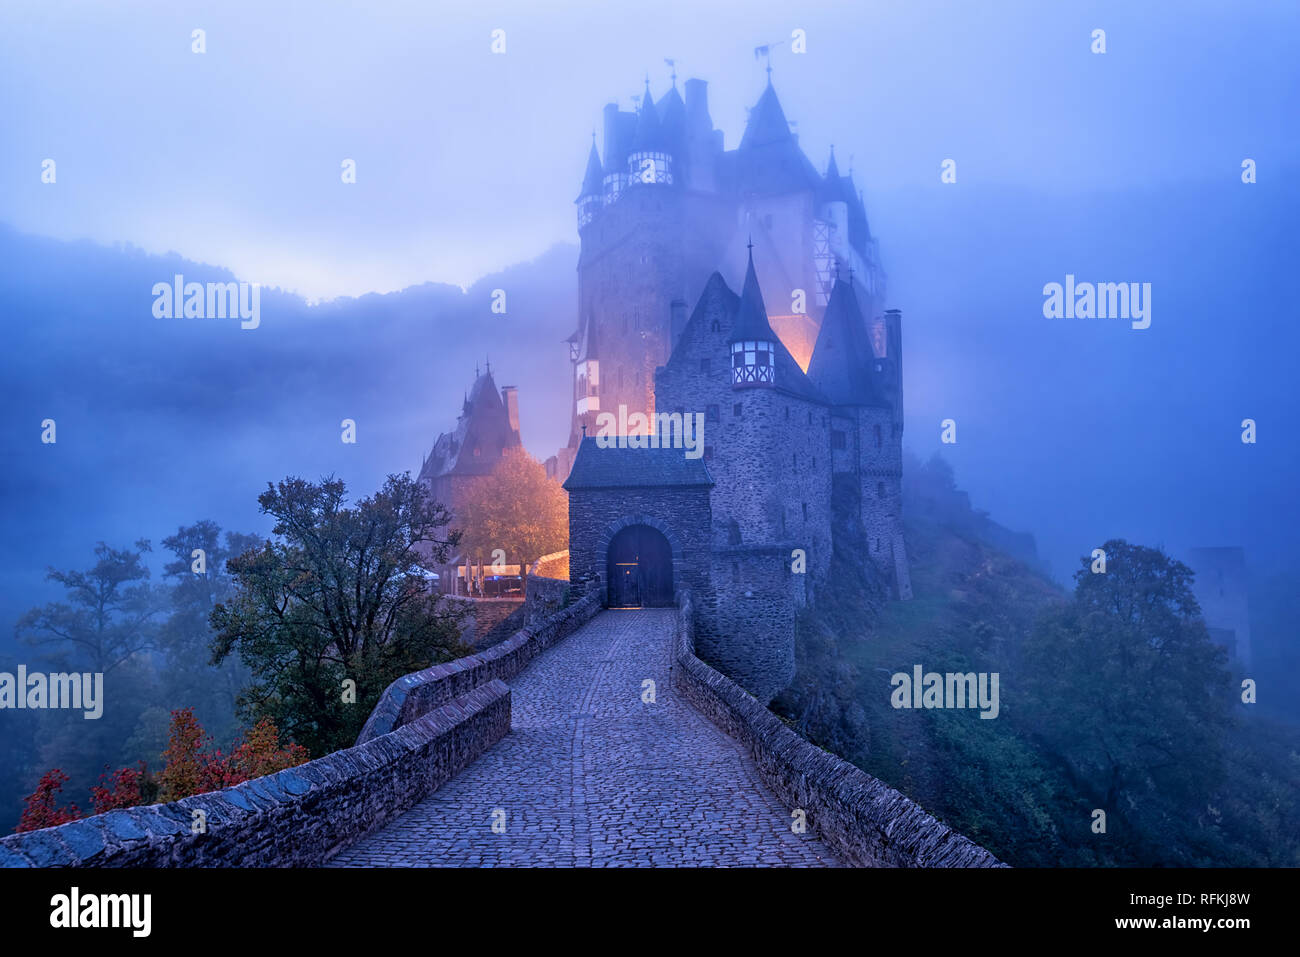 Die mittelalterlichen gotischen Burg Eltz Burg im Morgennebel, Deutschland. Burg Eltz ist eine der eindrucksvollsten und bekanntesten Burgen in Deutschland. Stockfoto